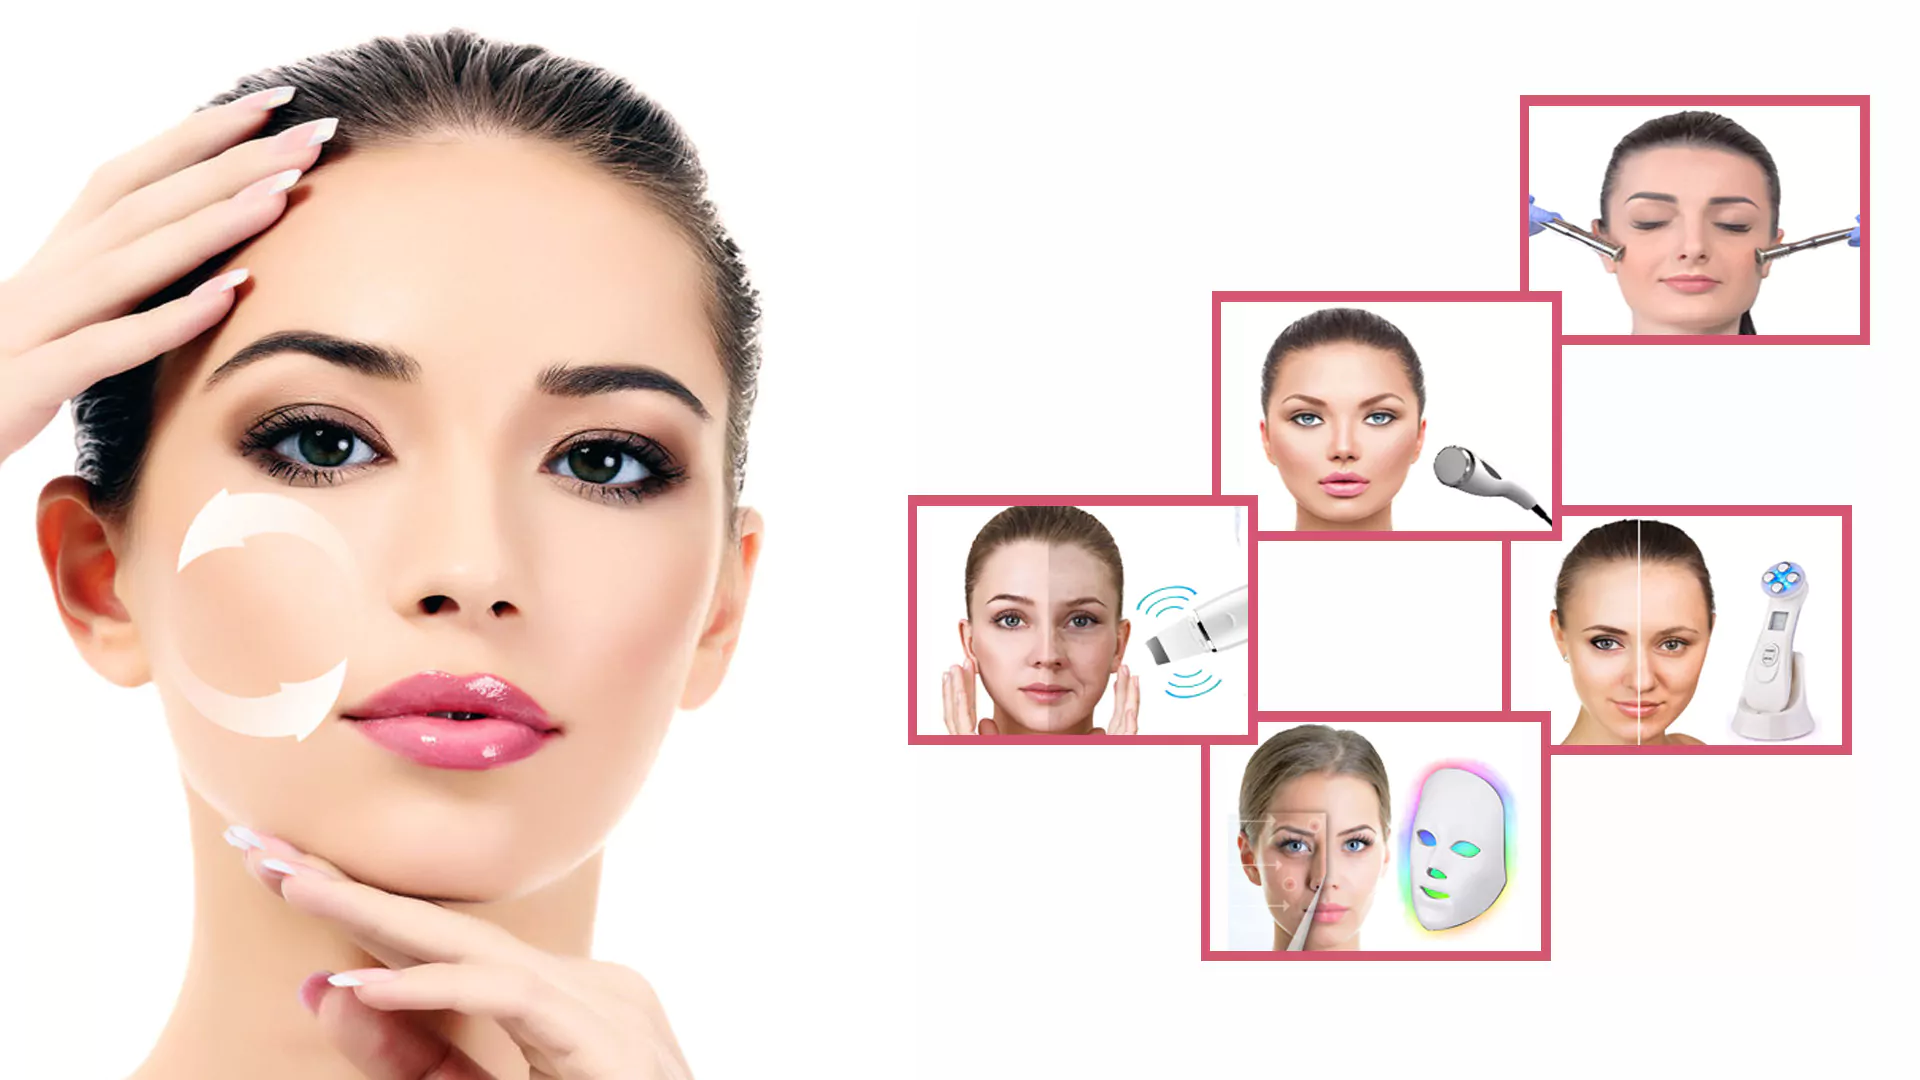 Bild einer jungen Frau mit Apparativ Kosmetik Behandlung im Gesicht.